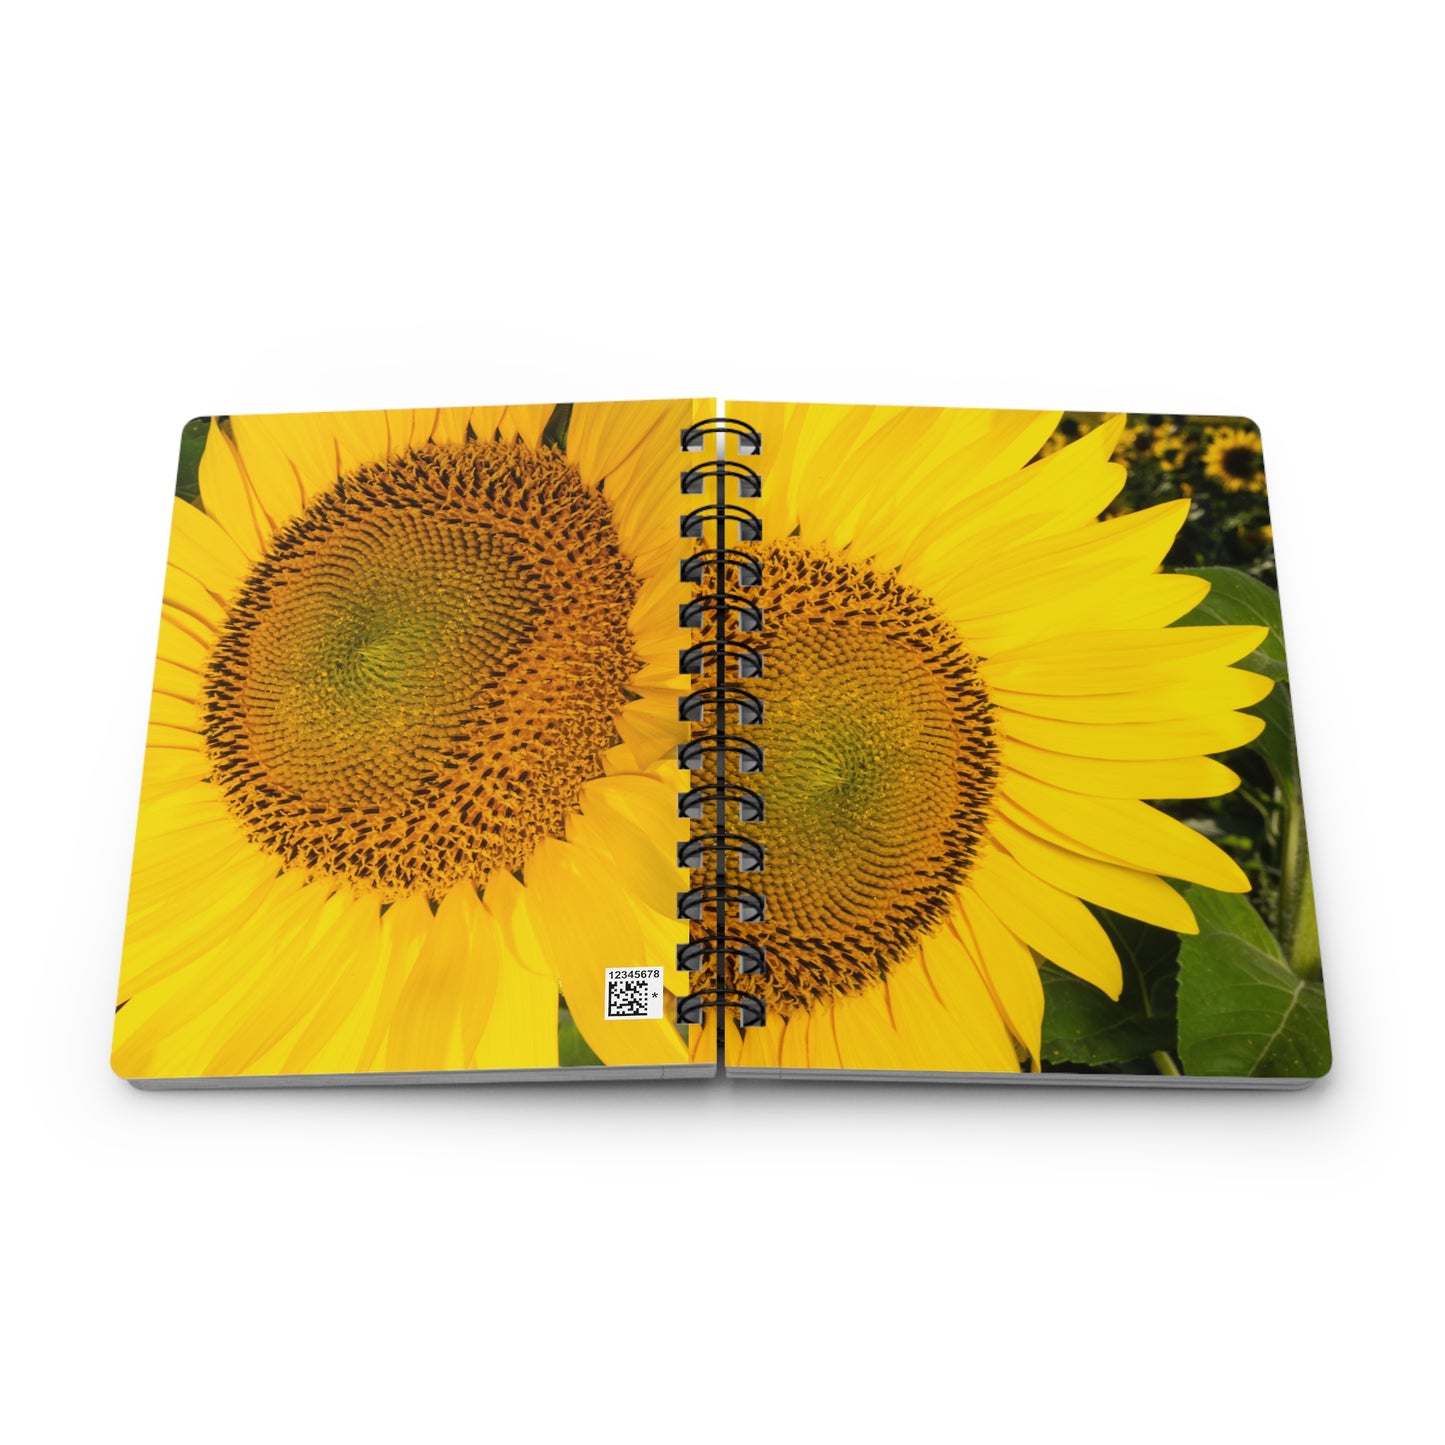 Sunflowers 07 - Spiral Bound Journal One Size